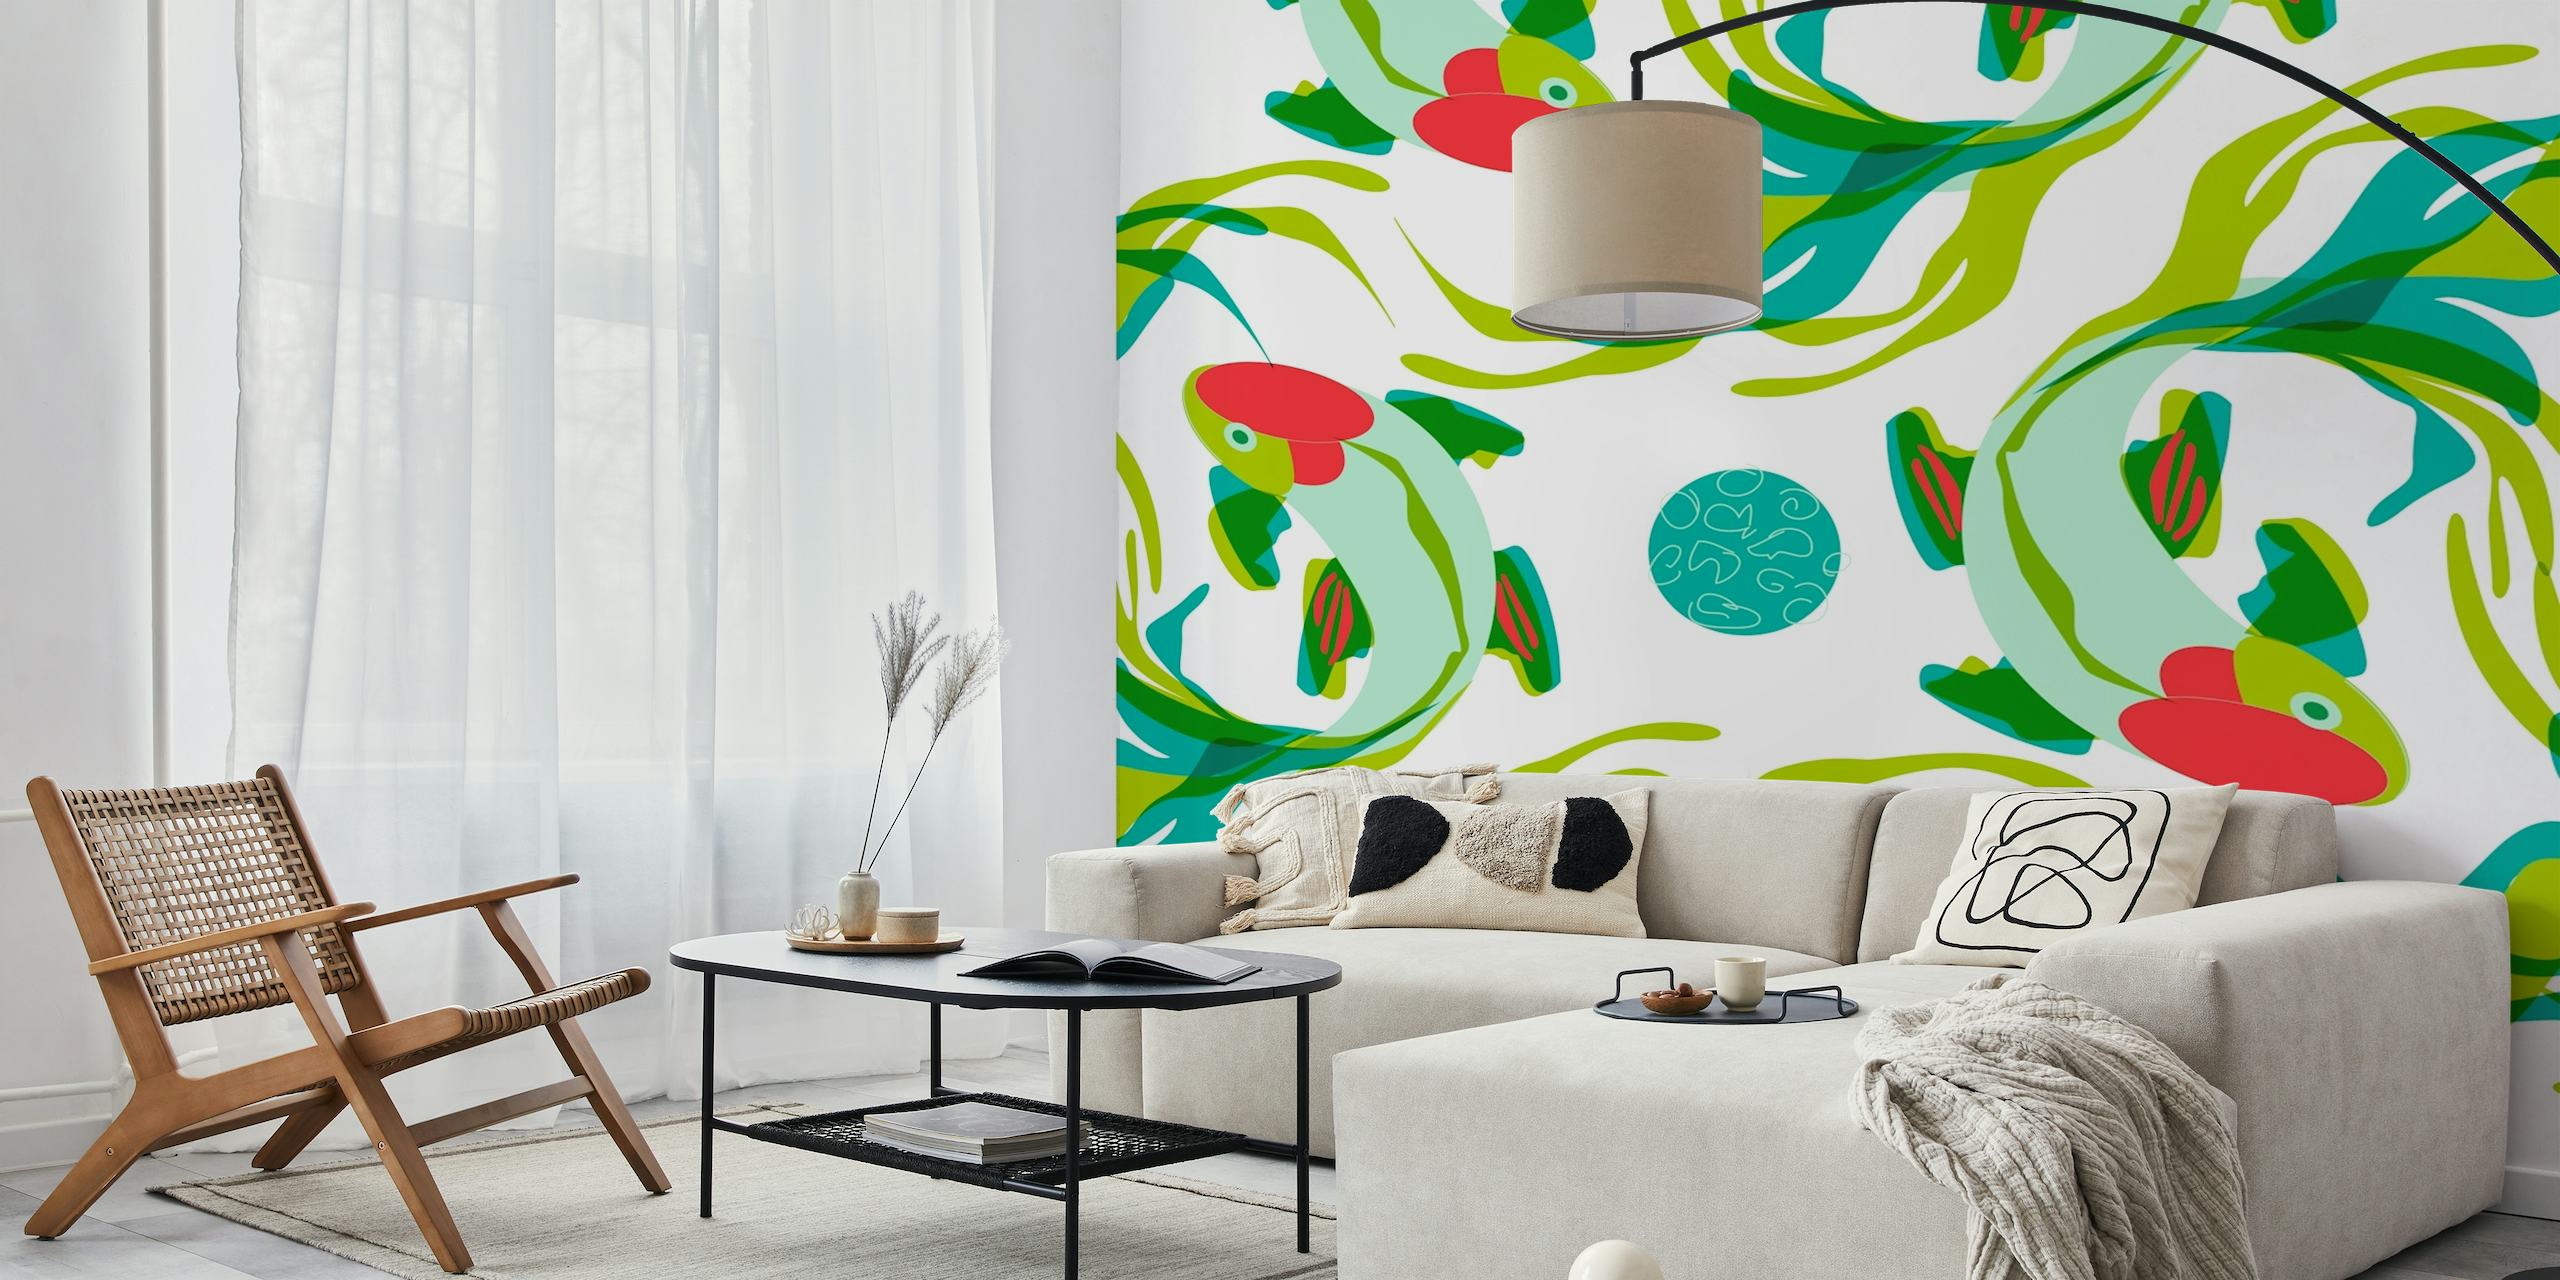 Kunstnerisk koi fisk og grønt vægmaleri til rolig indretning.